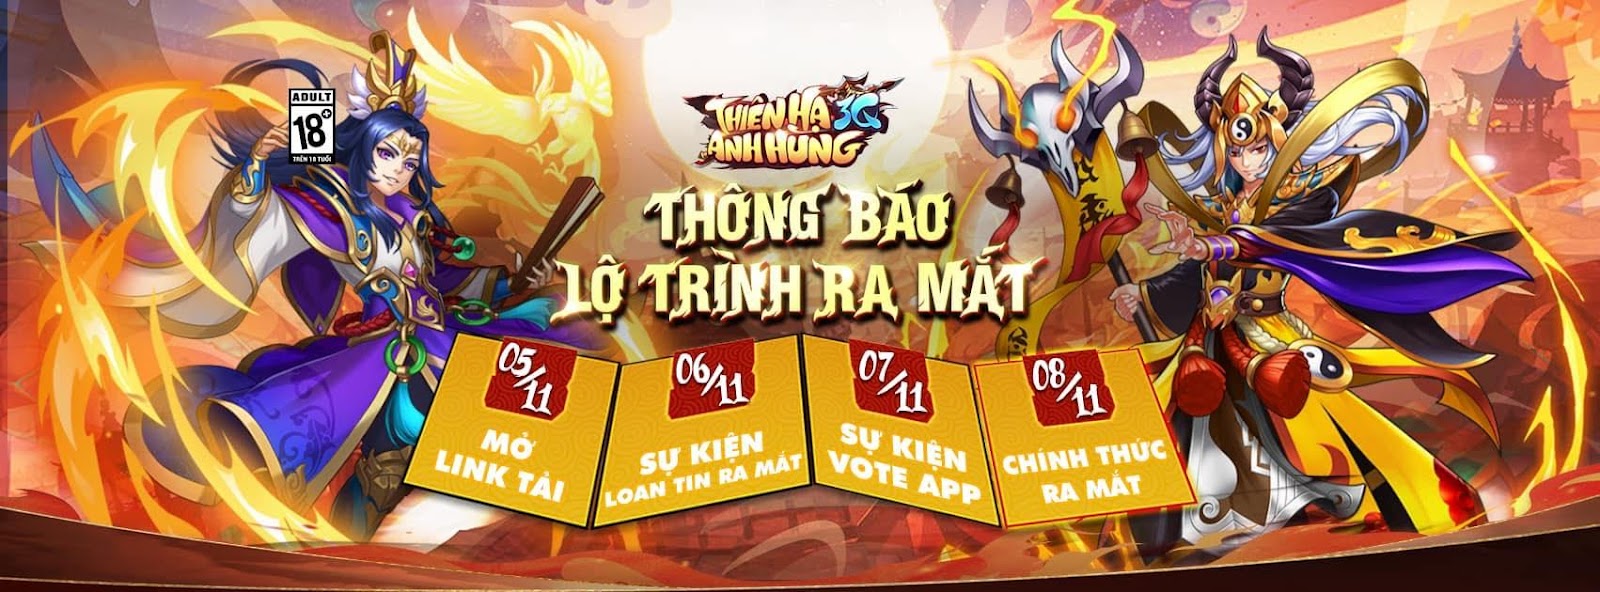 Tải game Thiên Hạ Anh Hùng 3Q mới nhất cho điện thoại Android, iOS ThienHaAnhHung3Q-CD1-11